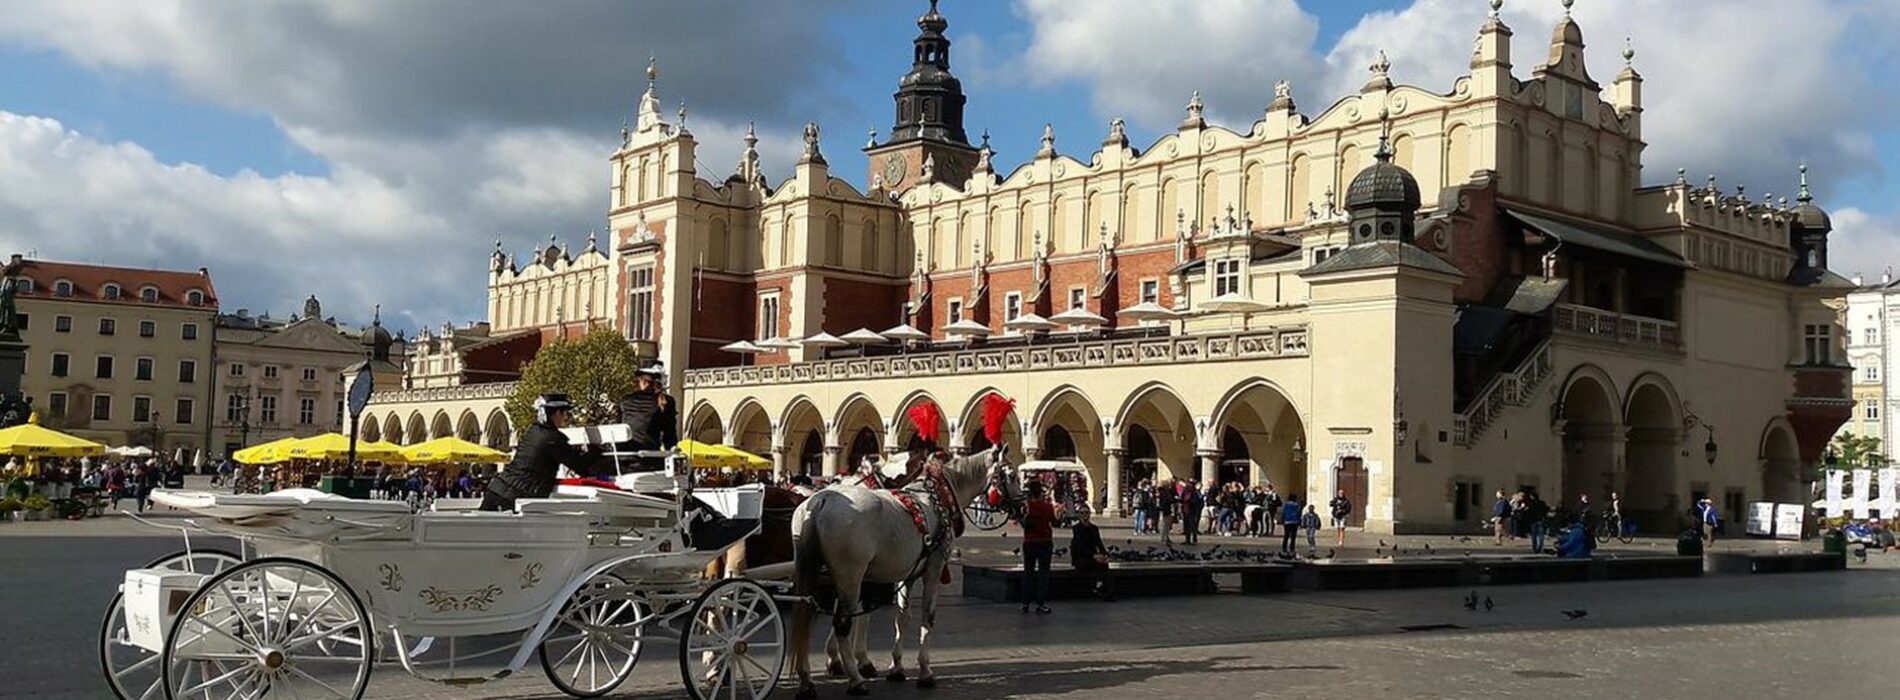 Jakie ciekawe festiwale i wydarzenia kulturalne odbywają się latem w Krakowie?